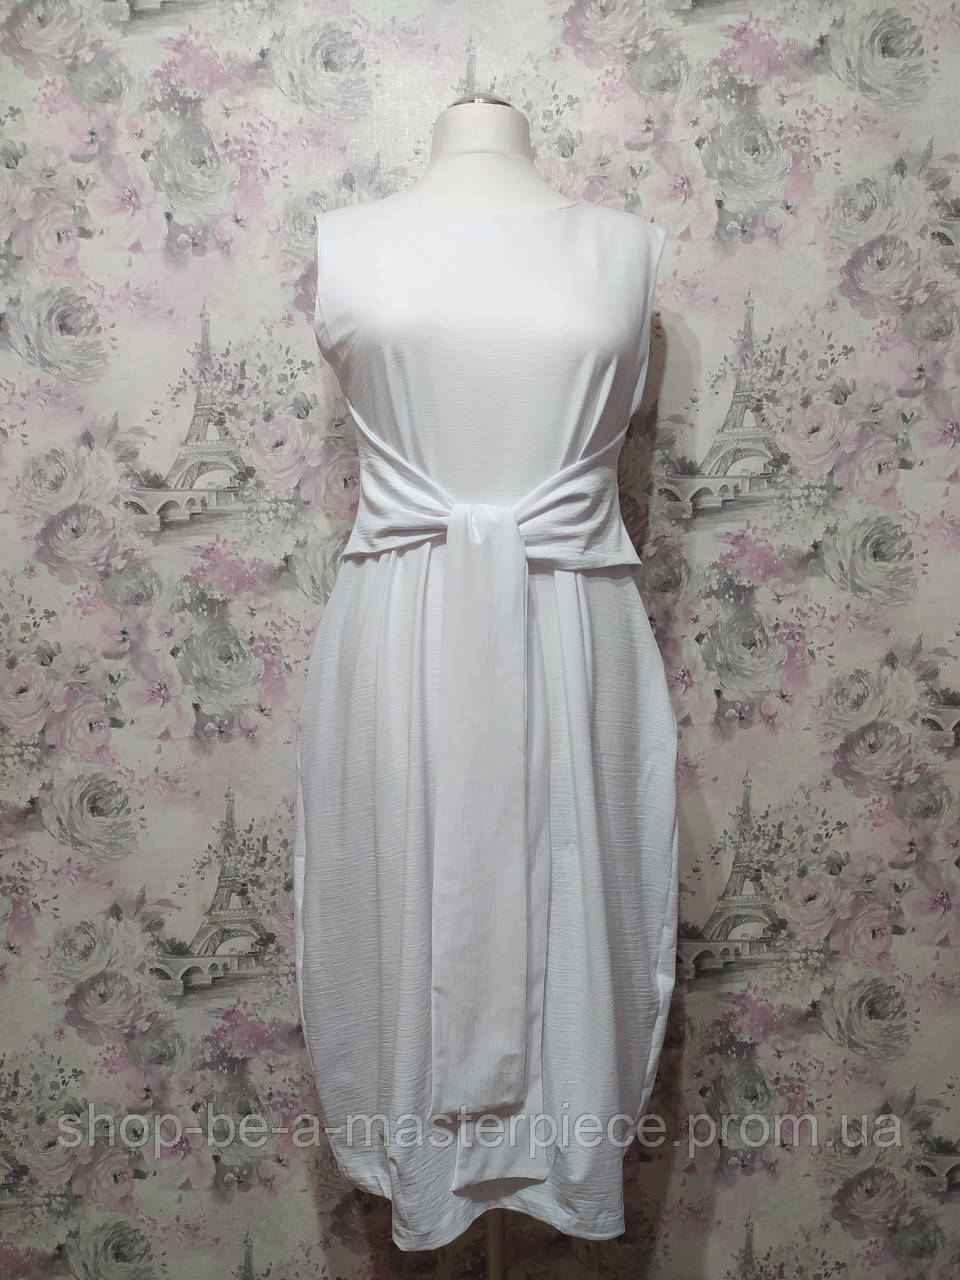 Сукня - сарафан із поясом жіноча бохо літня трикотажна повсякденна білий 44